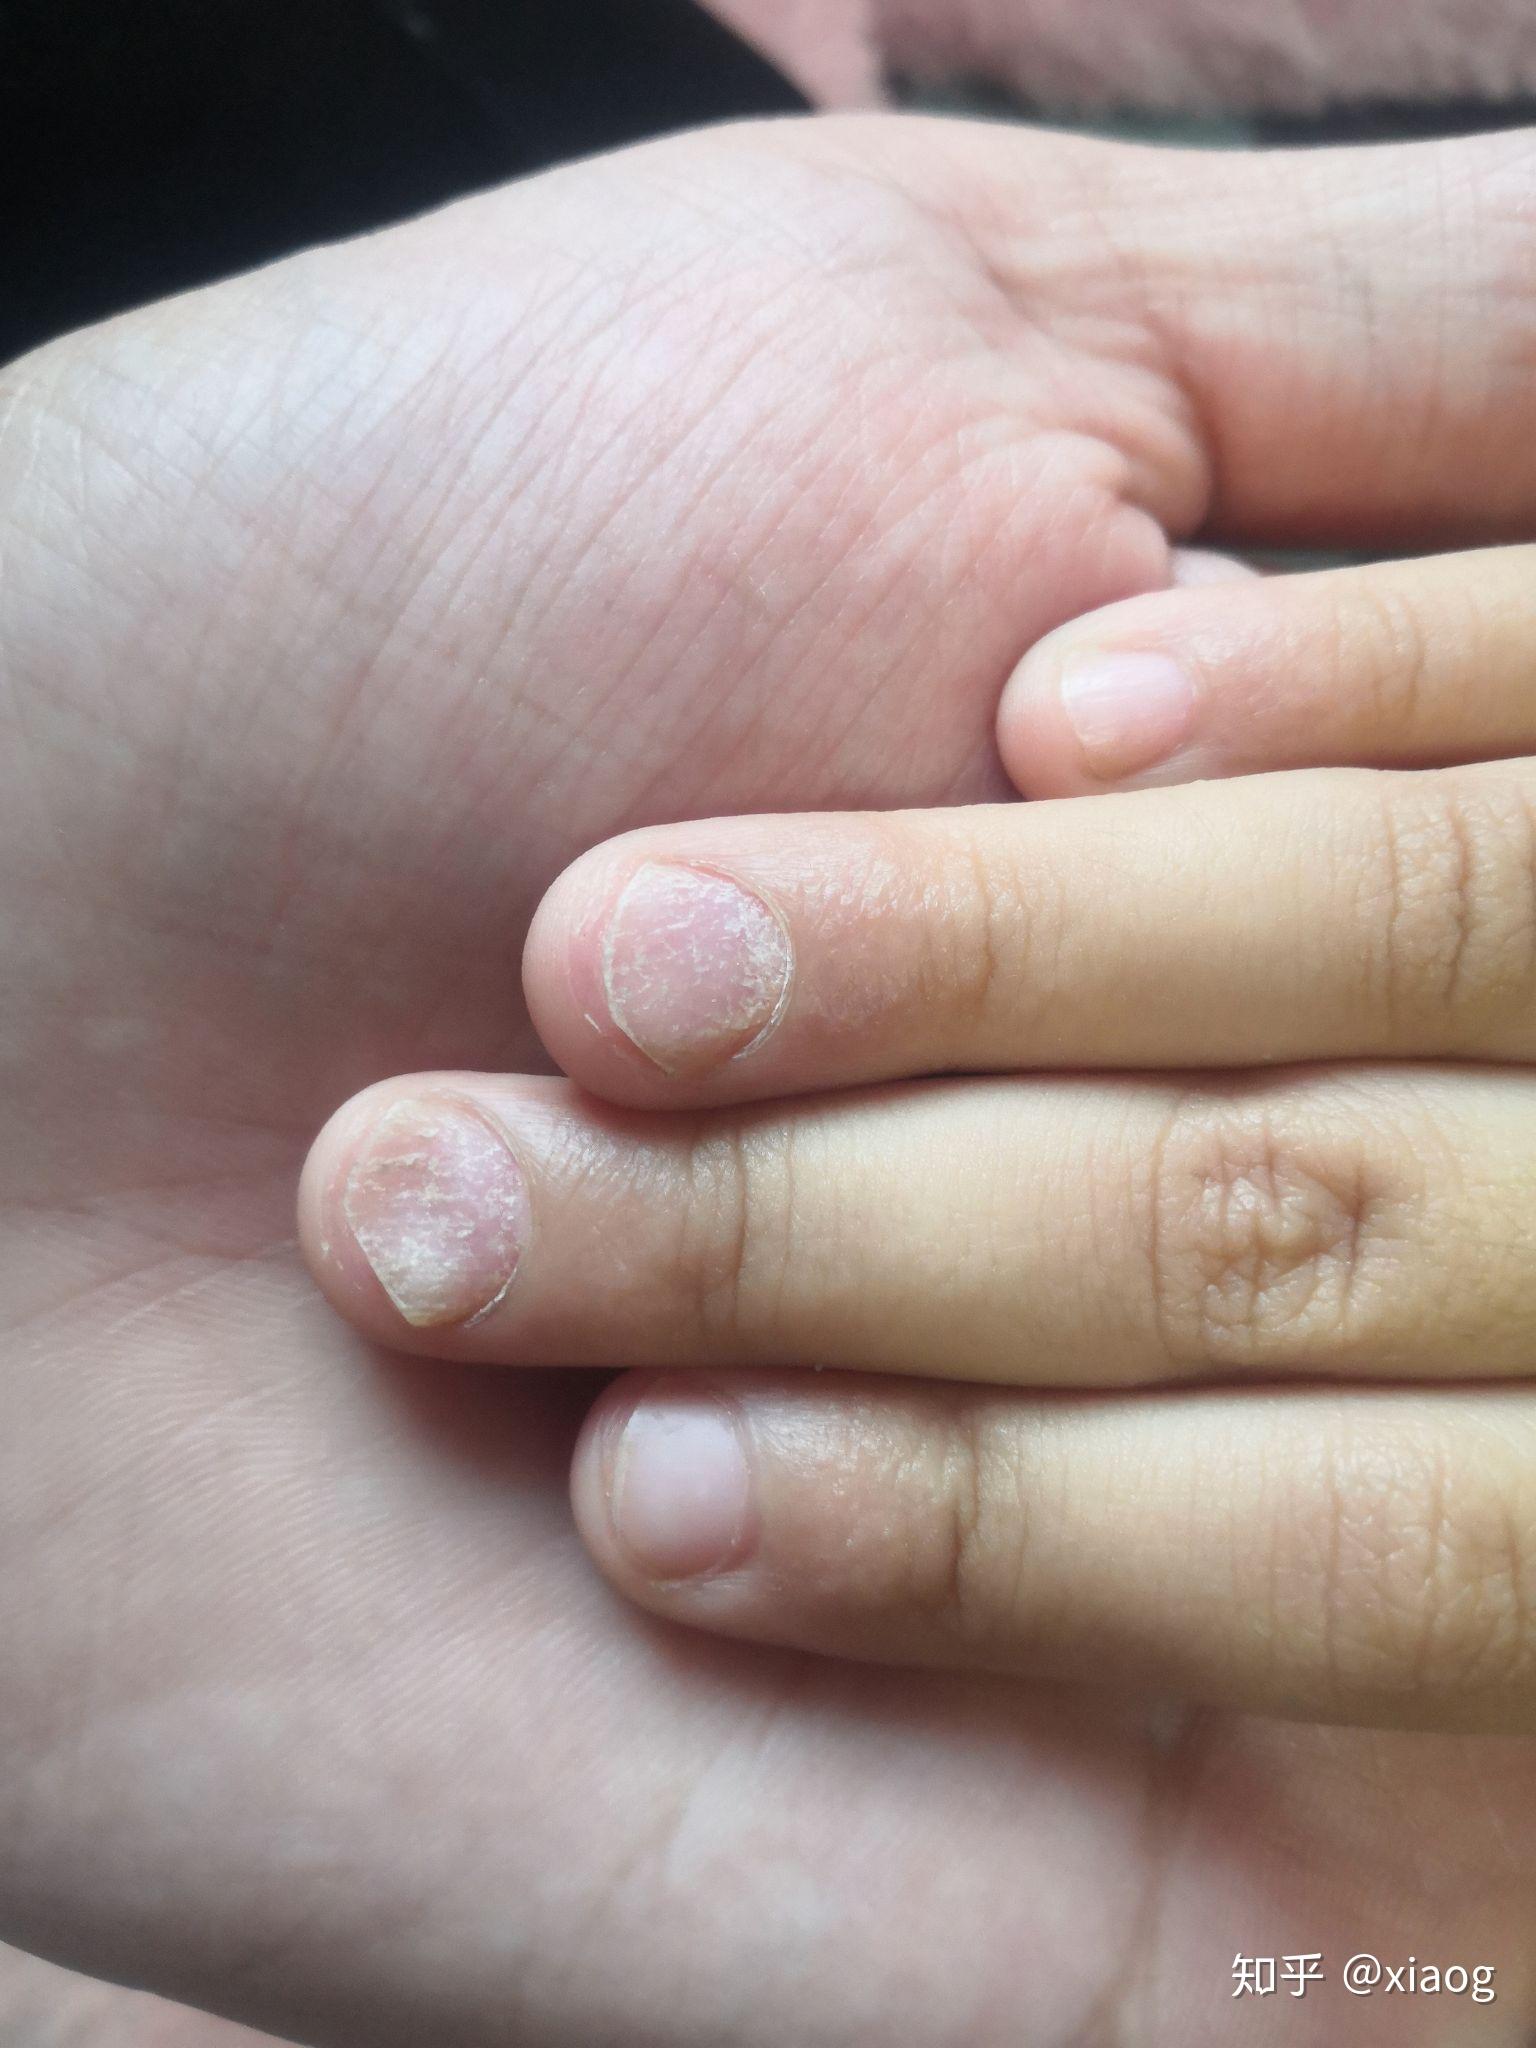 孩子抠指甲严重的图片,长期抠指甲的危害图片(3) - 伤感说说吧